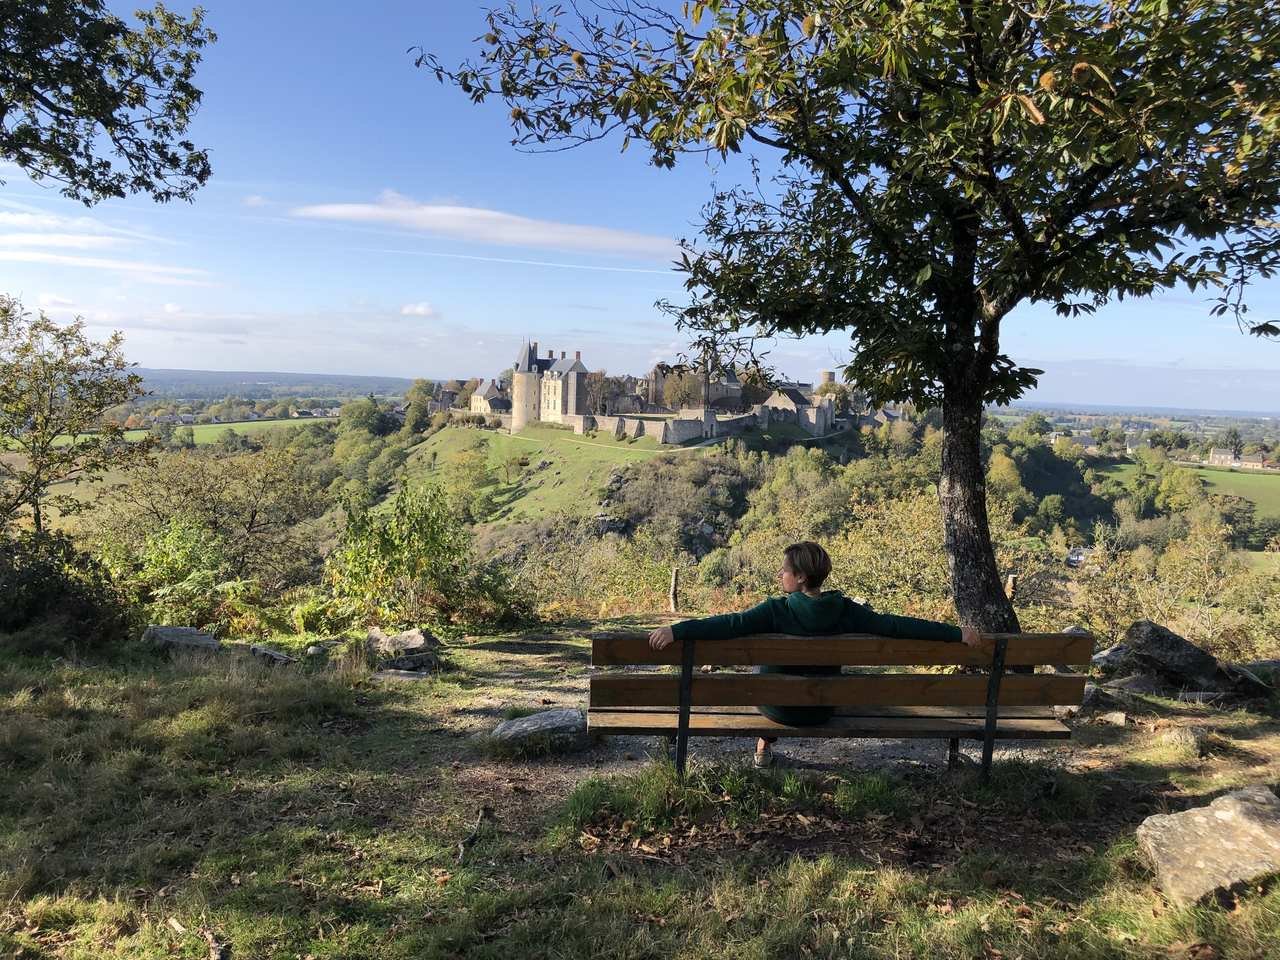 zdjecie ławki i osoby siedzacej na niej , podziwiajacej widok zamku w sainte suzanne